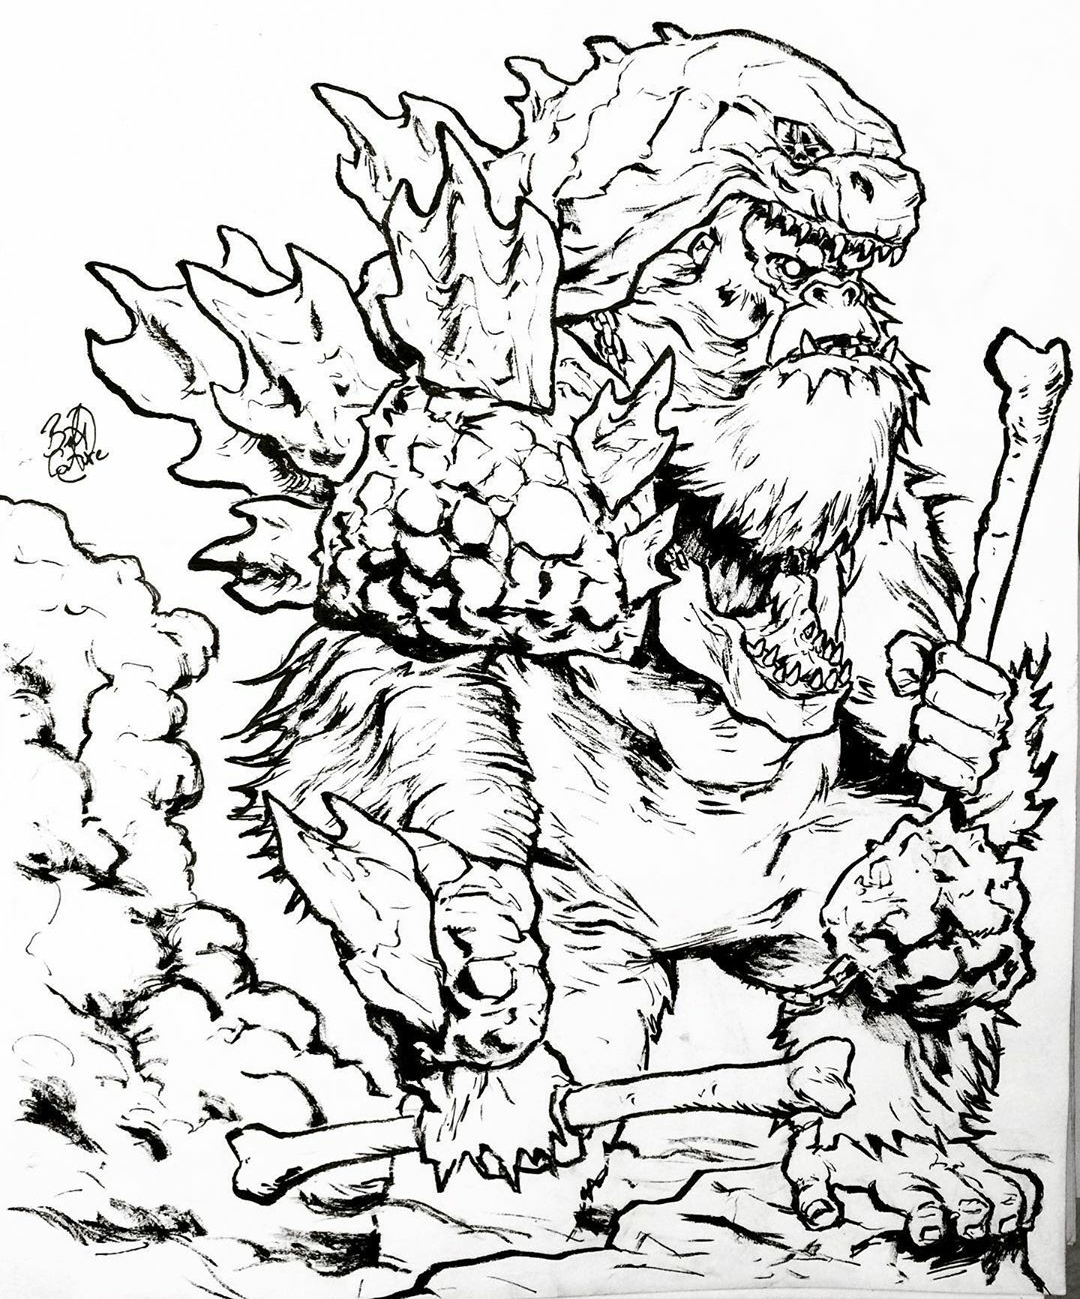 Kong kills Godzilla: New Godzilla vs. Kong fan art depicts Kong as the